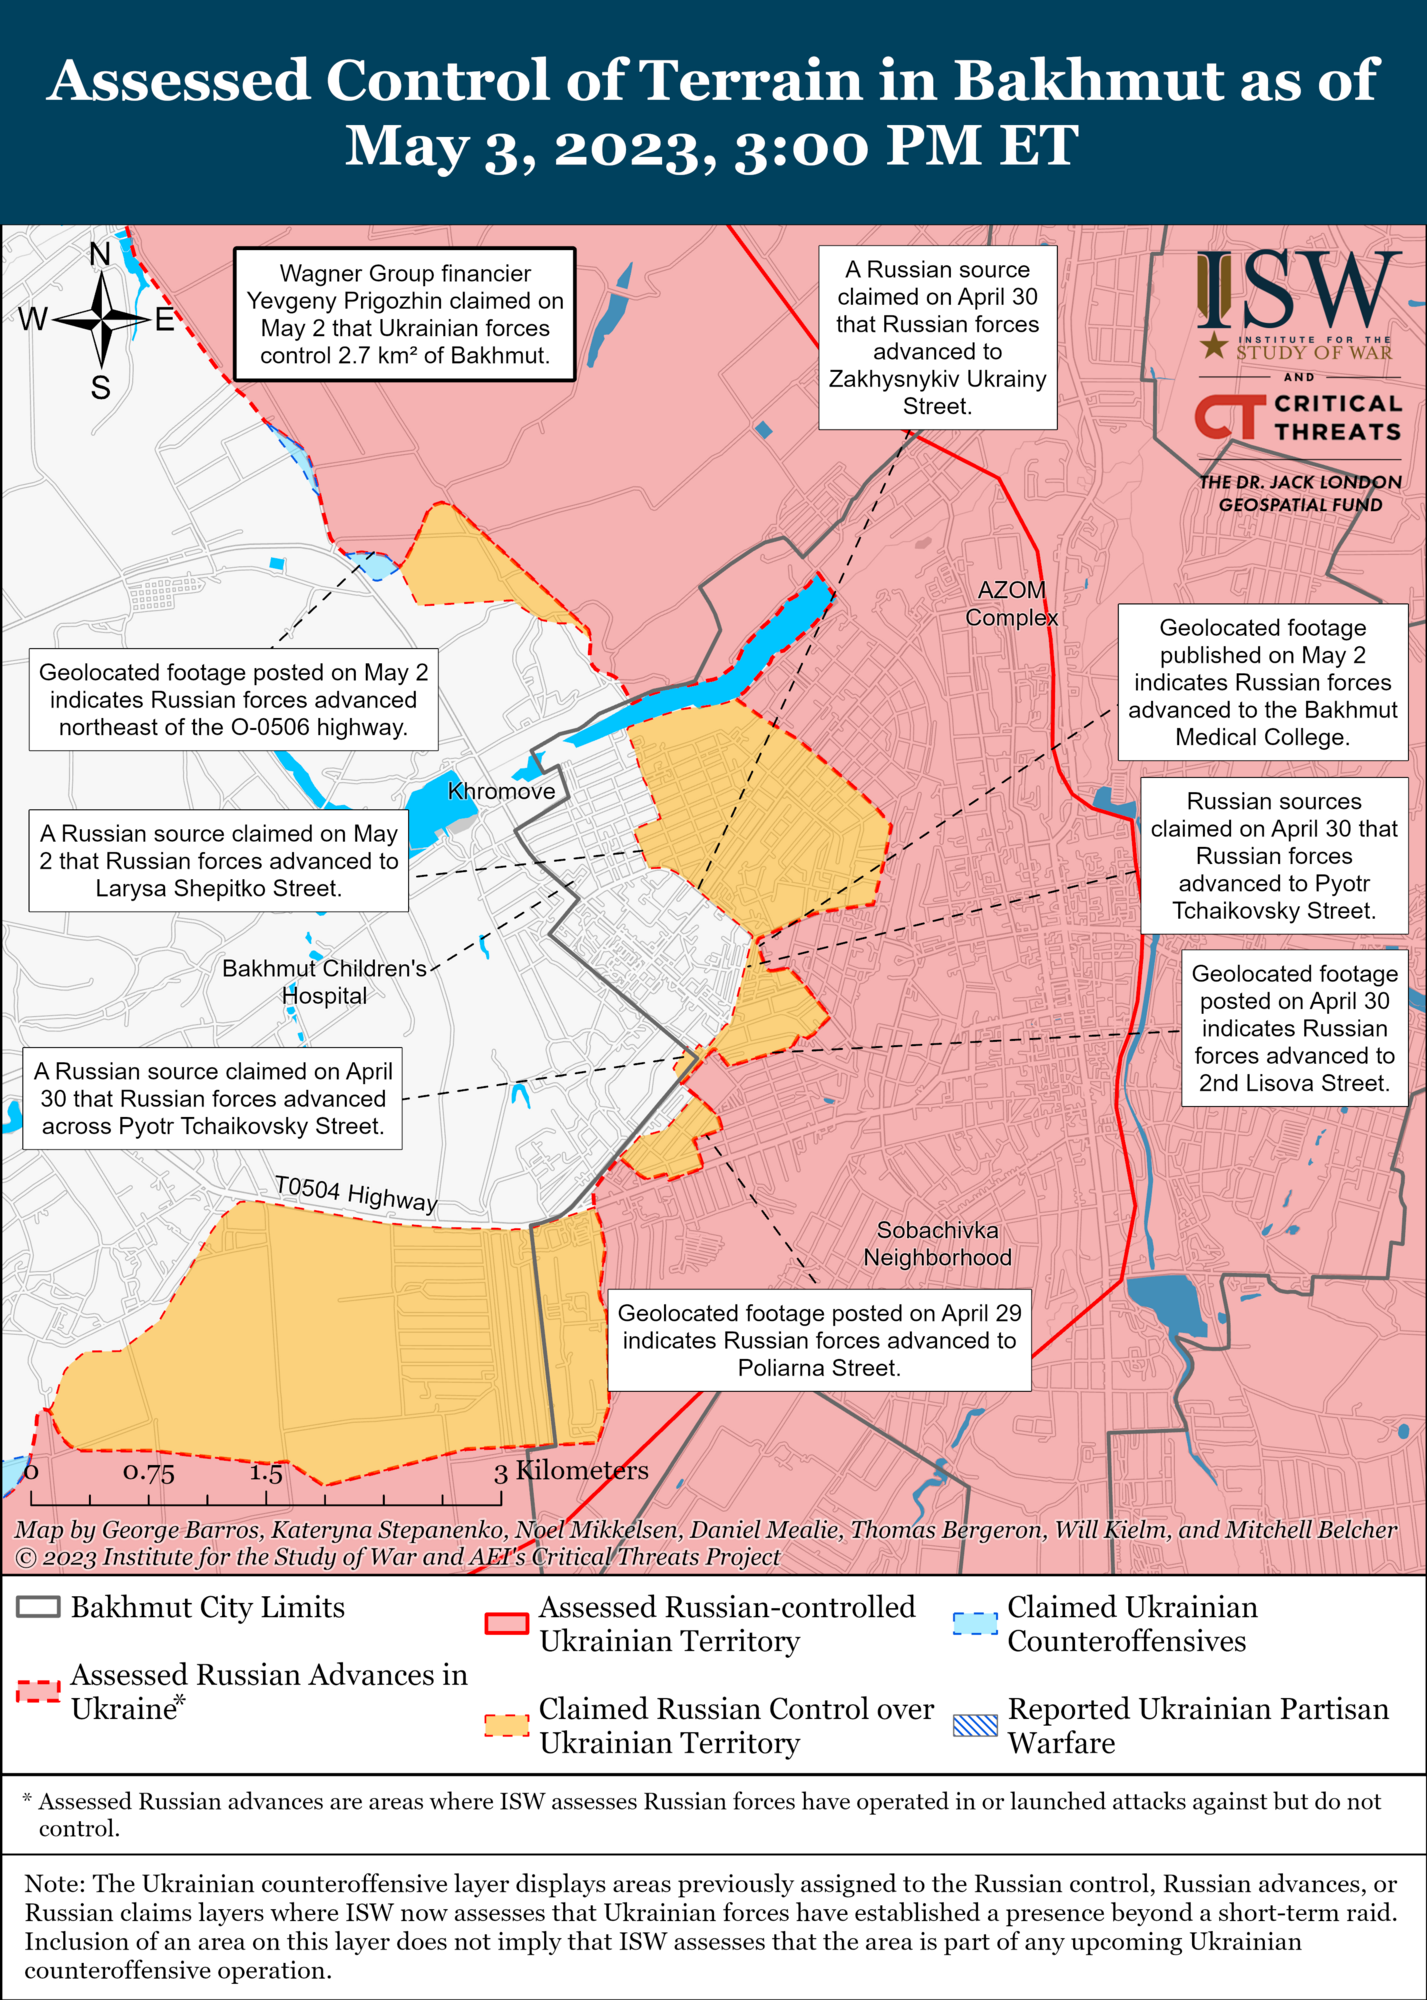 Войска РФ могли продвинуться в Бахмуте, ВСУ контратаковали врага в районе Авдеевки: анализ боевых действий от ISW